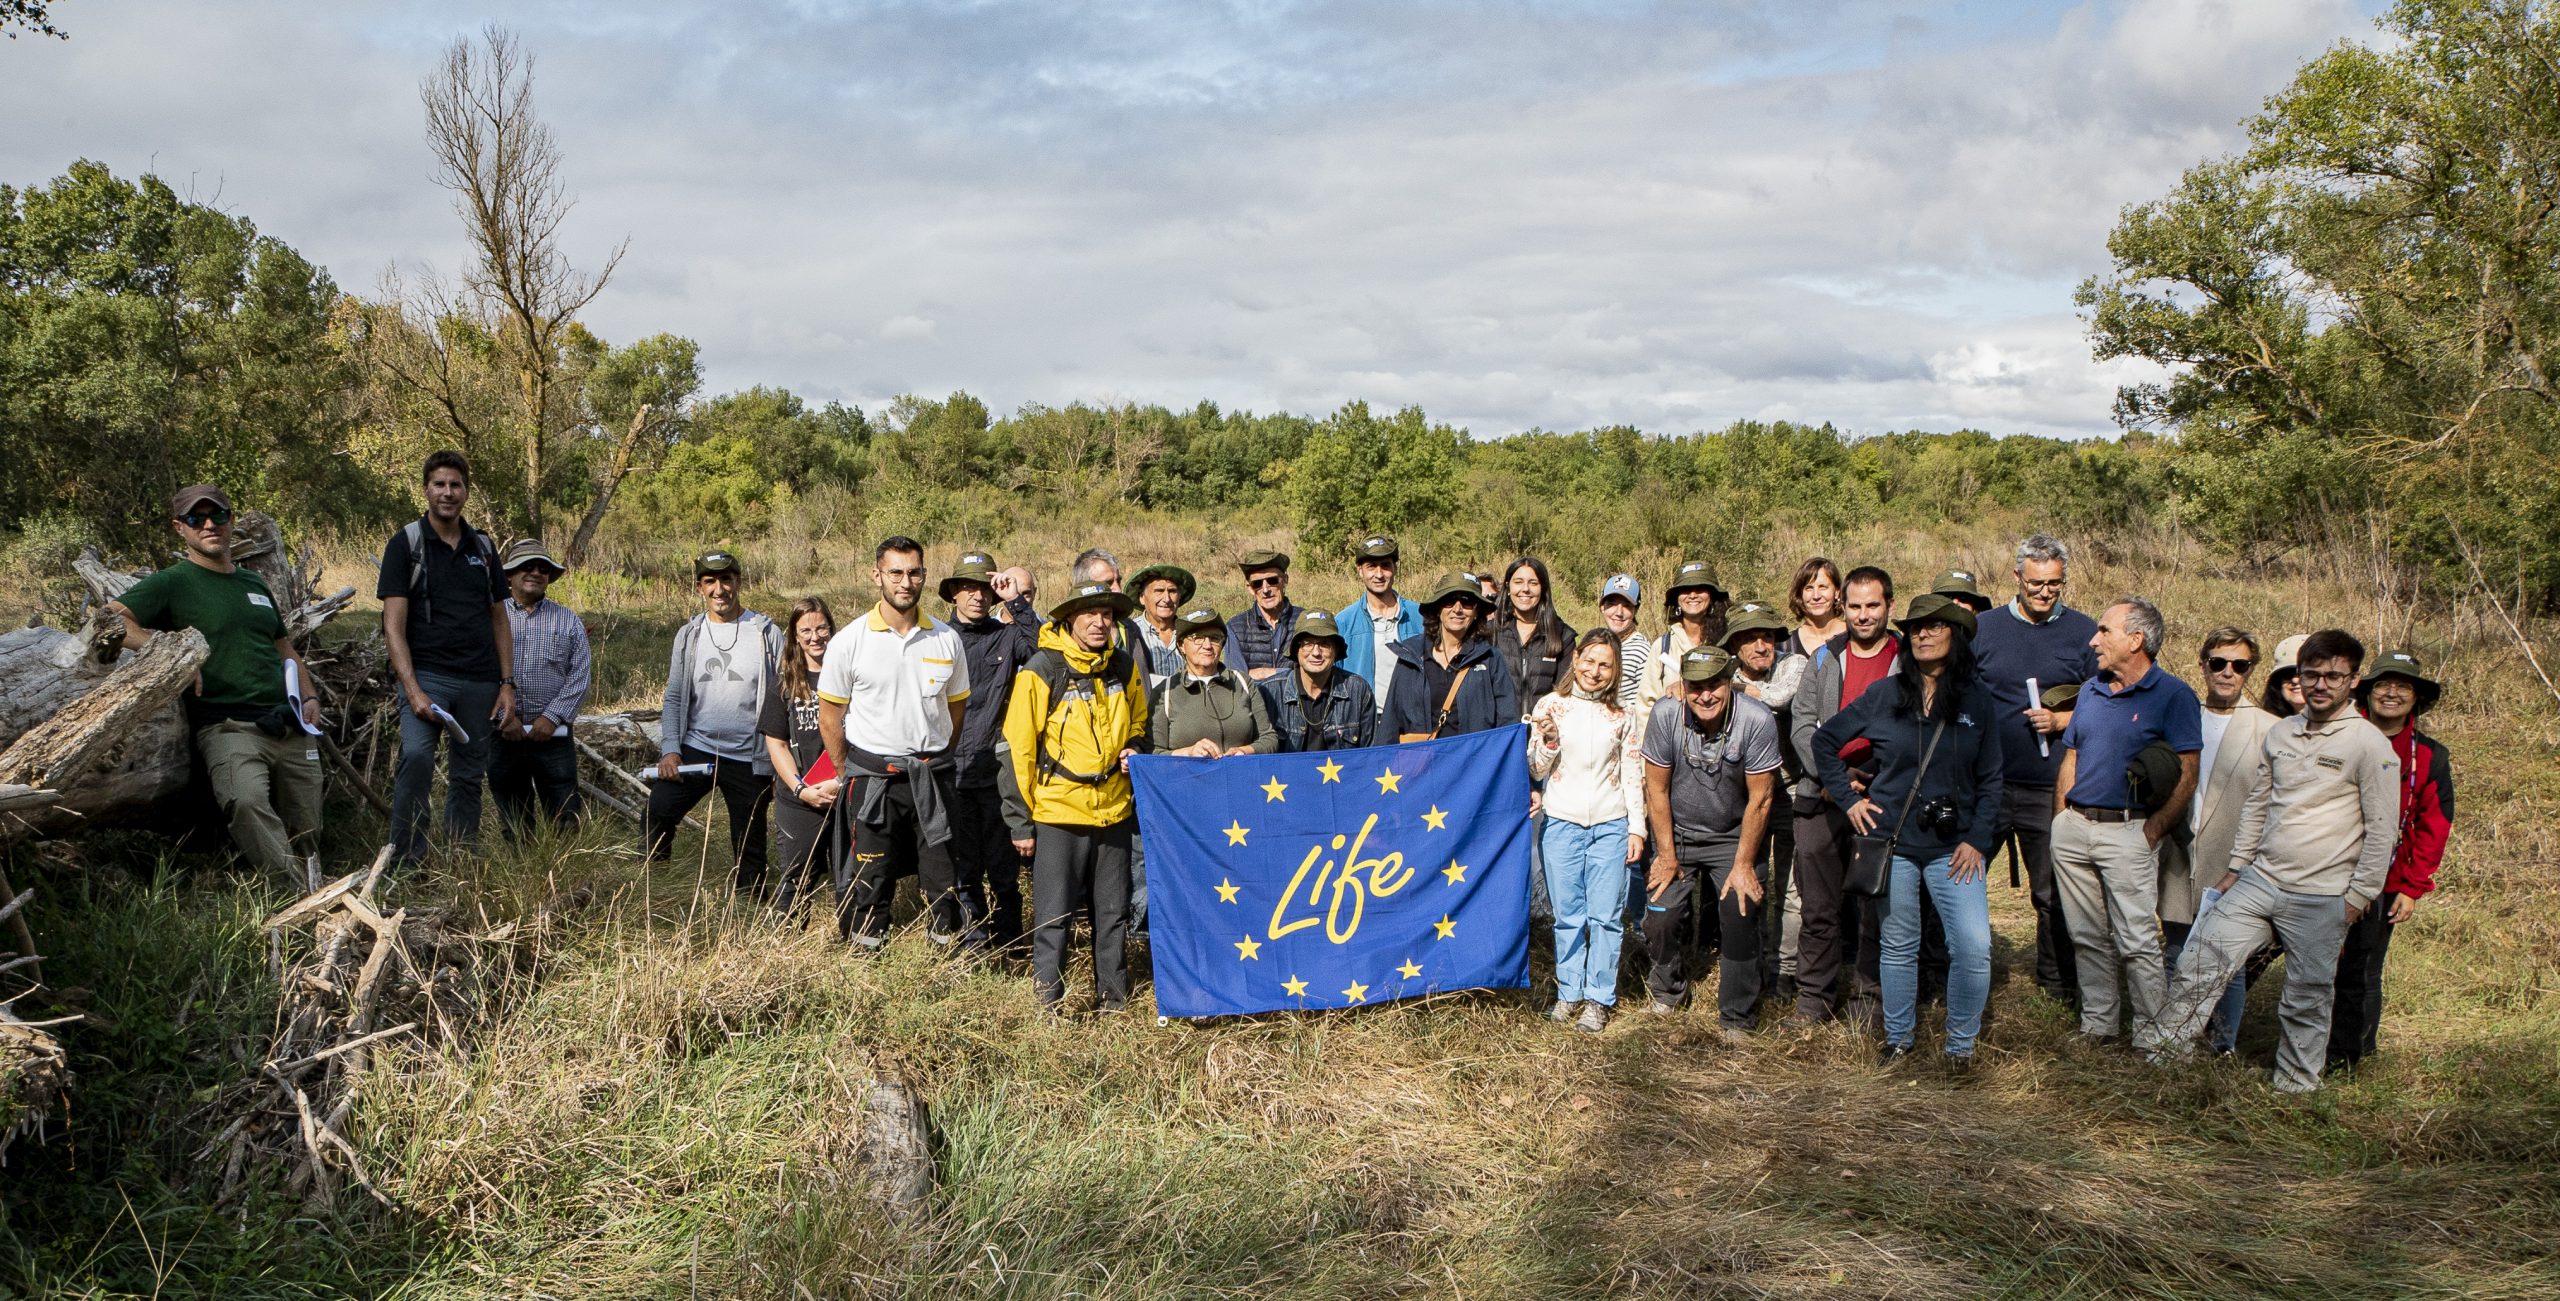 Grupo de trabajo del LIFE Ebro Resilience P1 con la bandera del Programa LIFE en una visita al Soto de Tamarigal